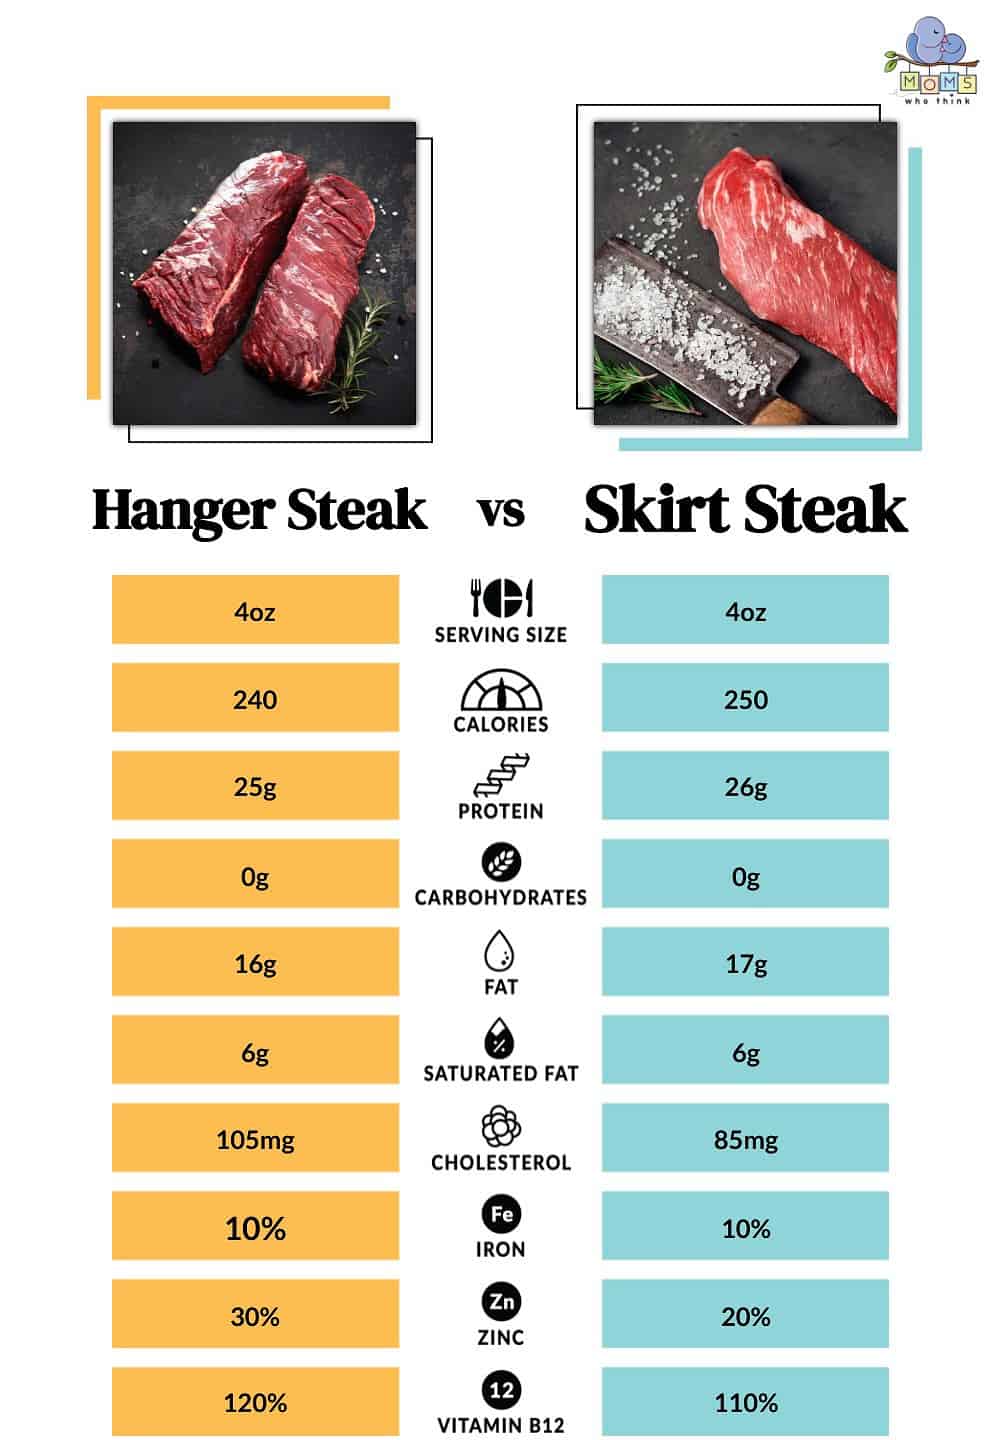 Hang Steak vs Skirt Steak Nutrition